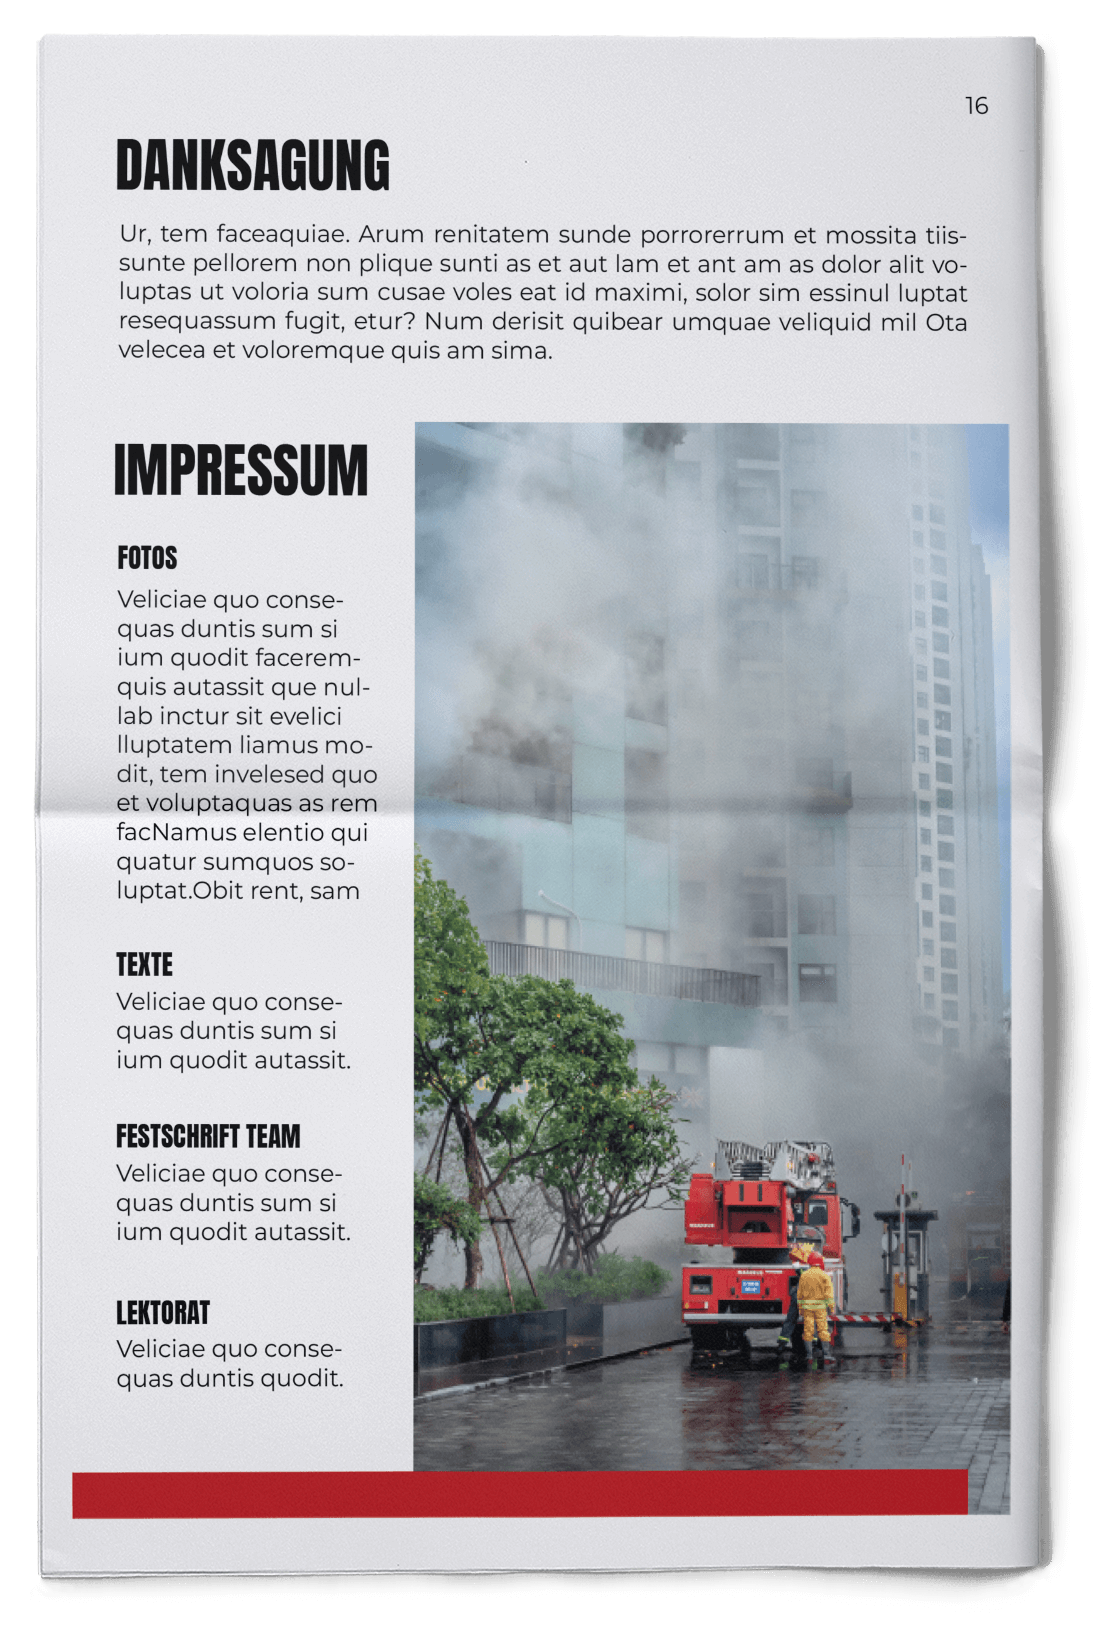 Vorlage für Impressum in einer Festzeitung für die Feuerwehr